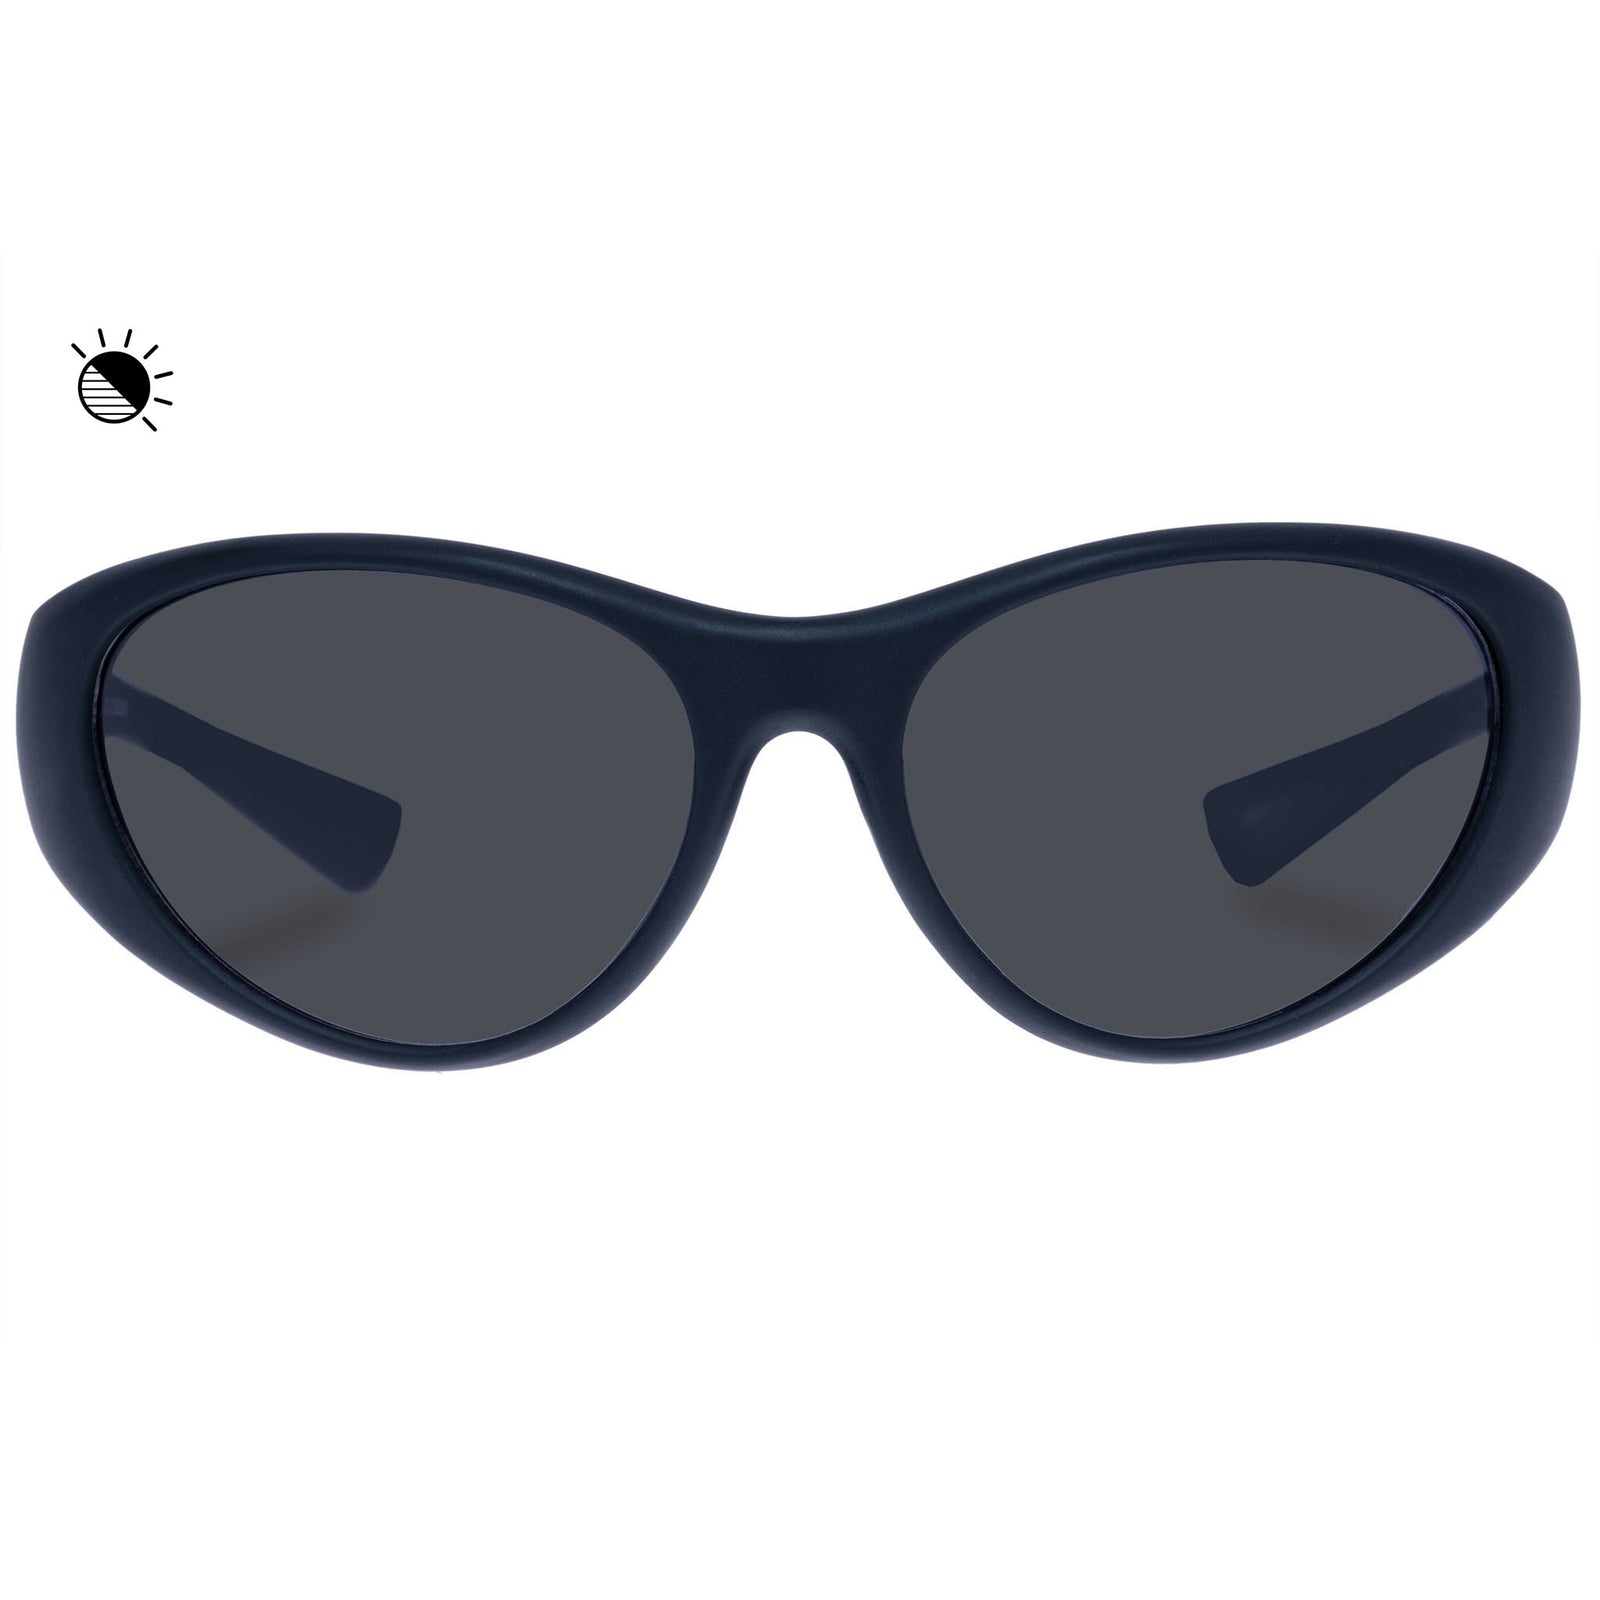 Chanel - Oval Sunglasses - Black Beige Brown - Chanel Eyewear